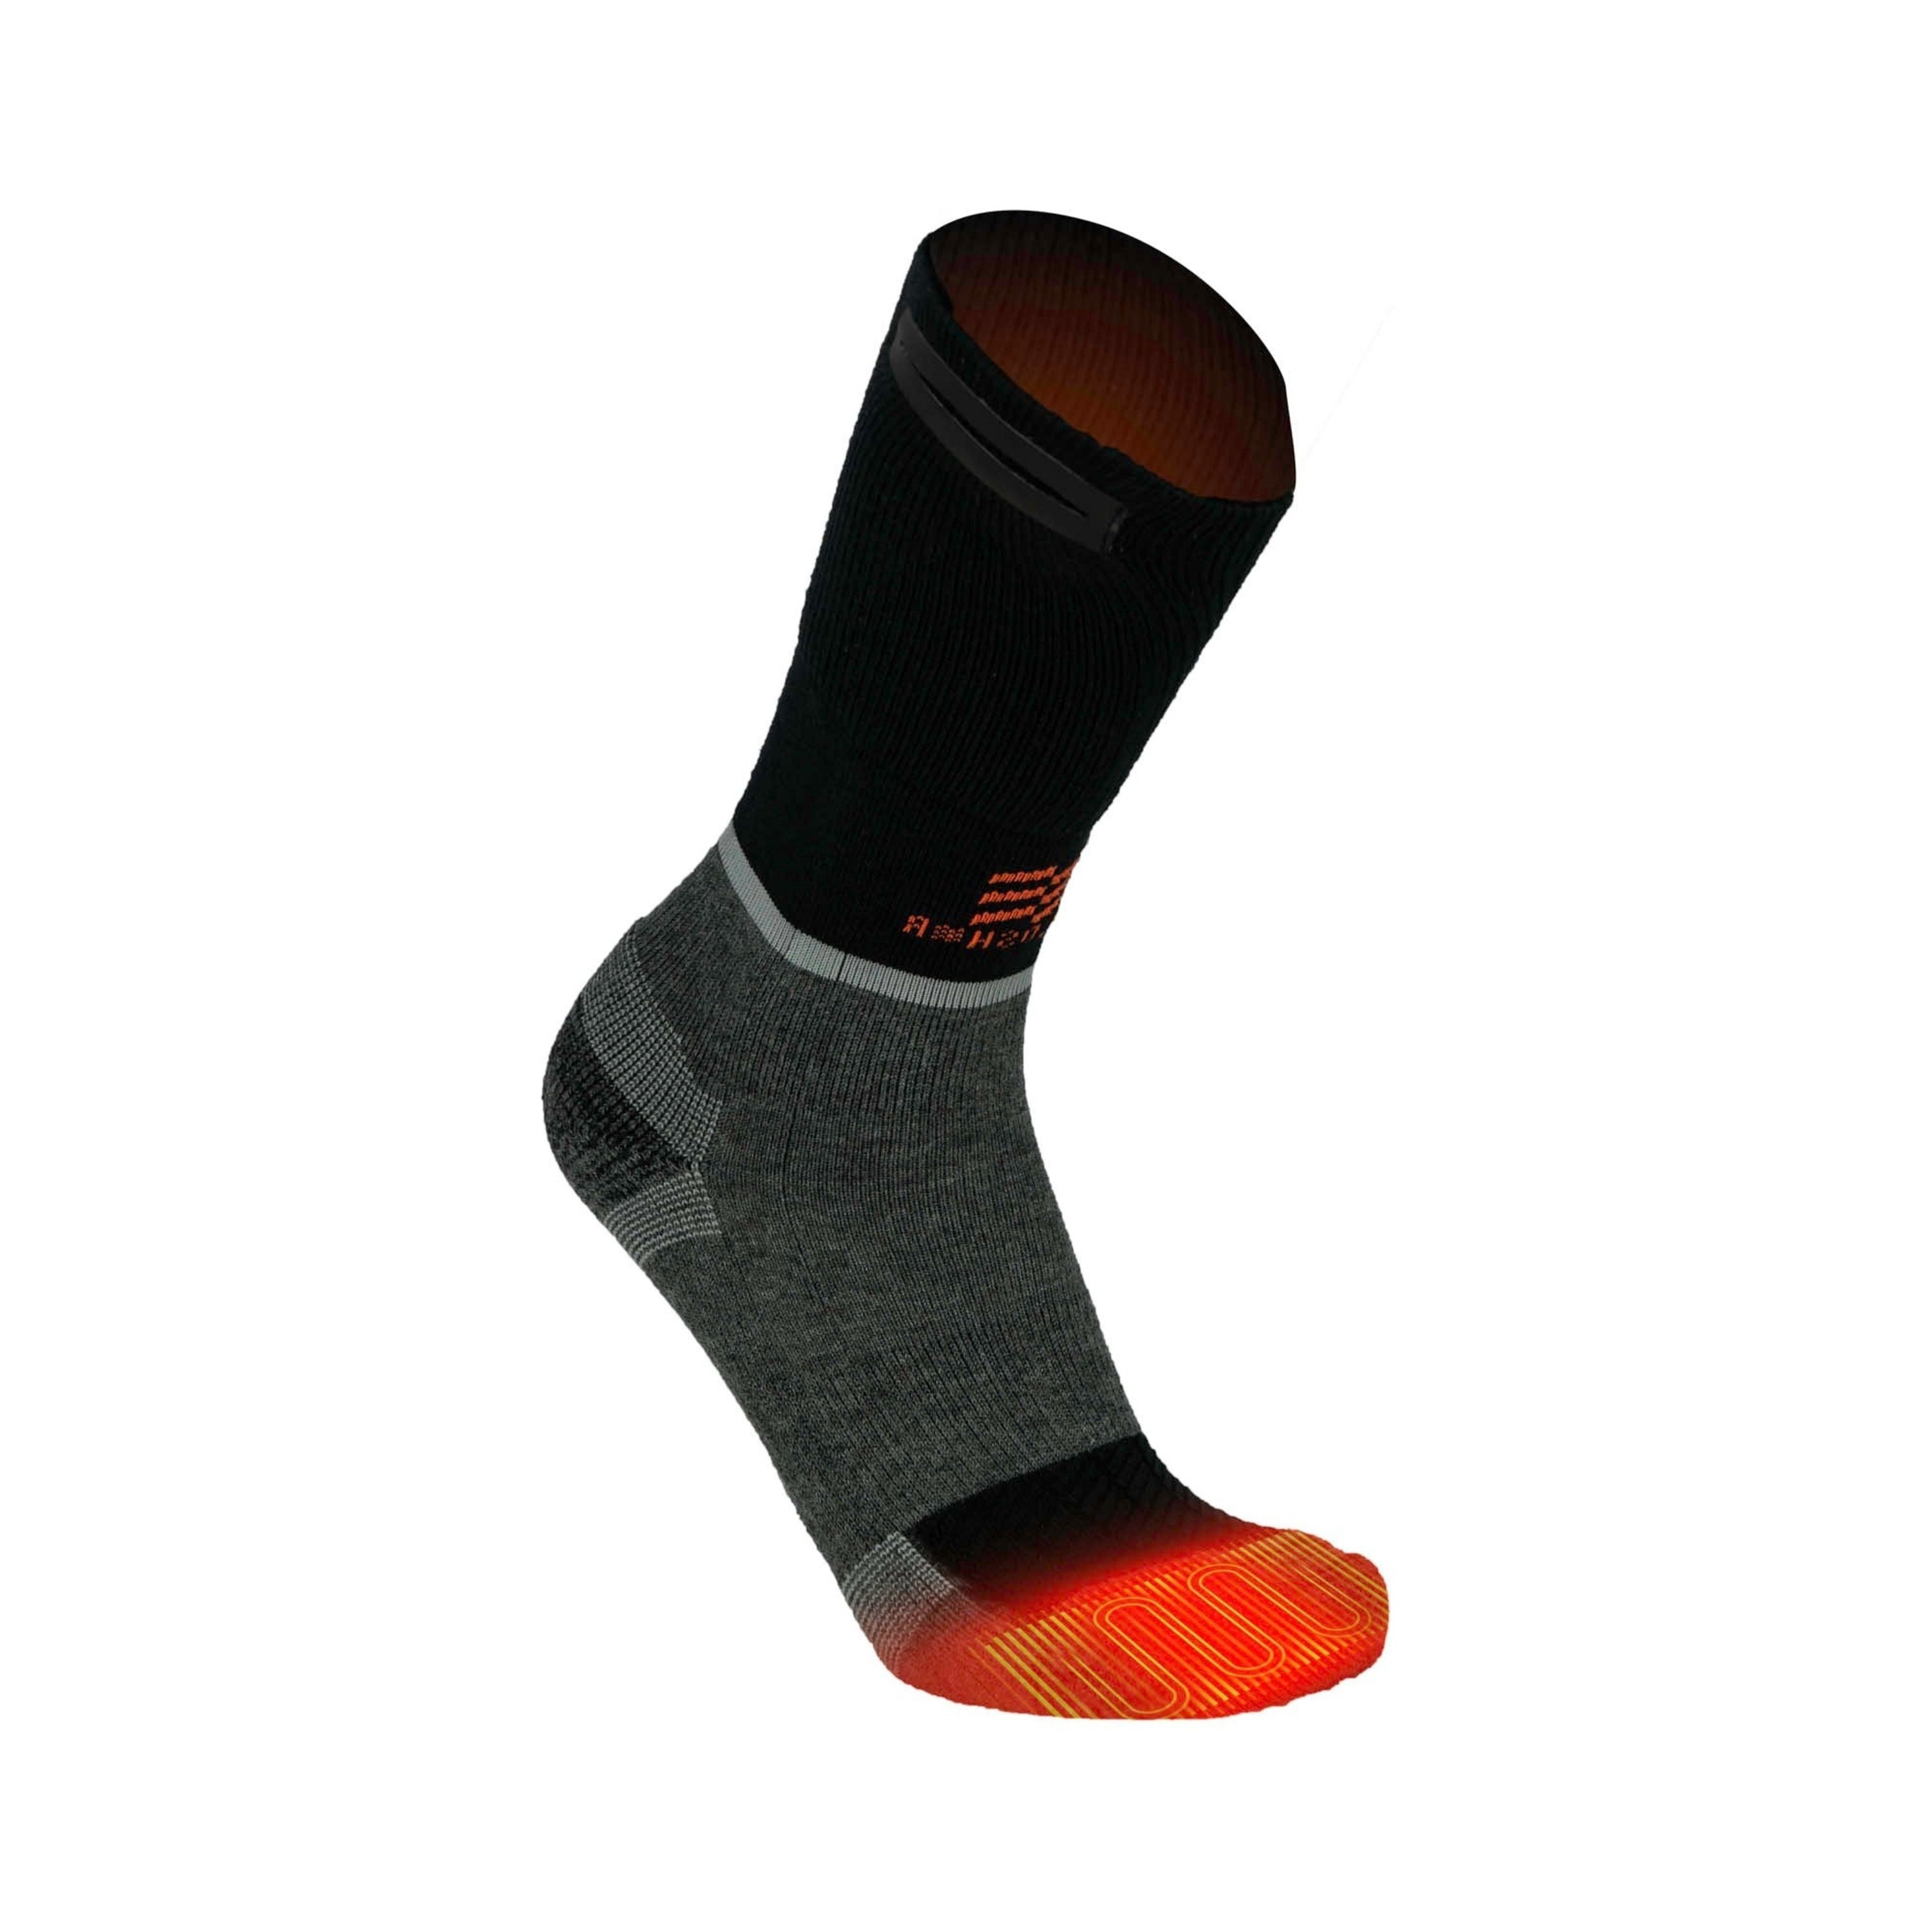 Merino heated socks - Unisex